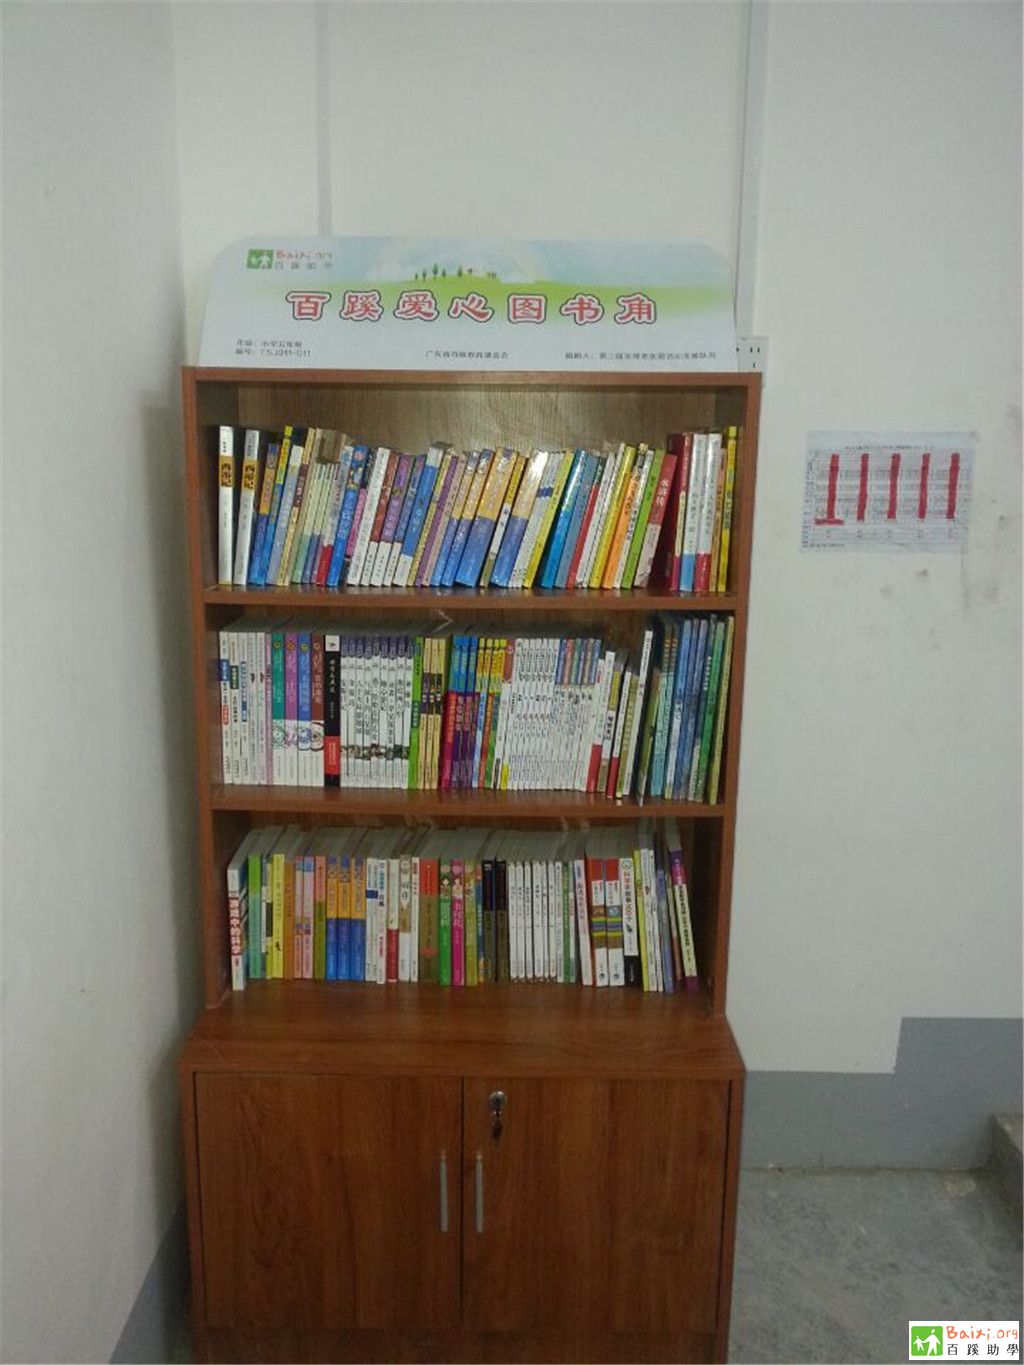 tsj011 广西巴马两间村小学班级图书角项目 进展记录